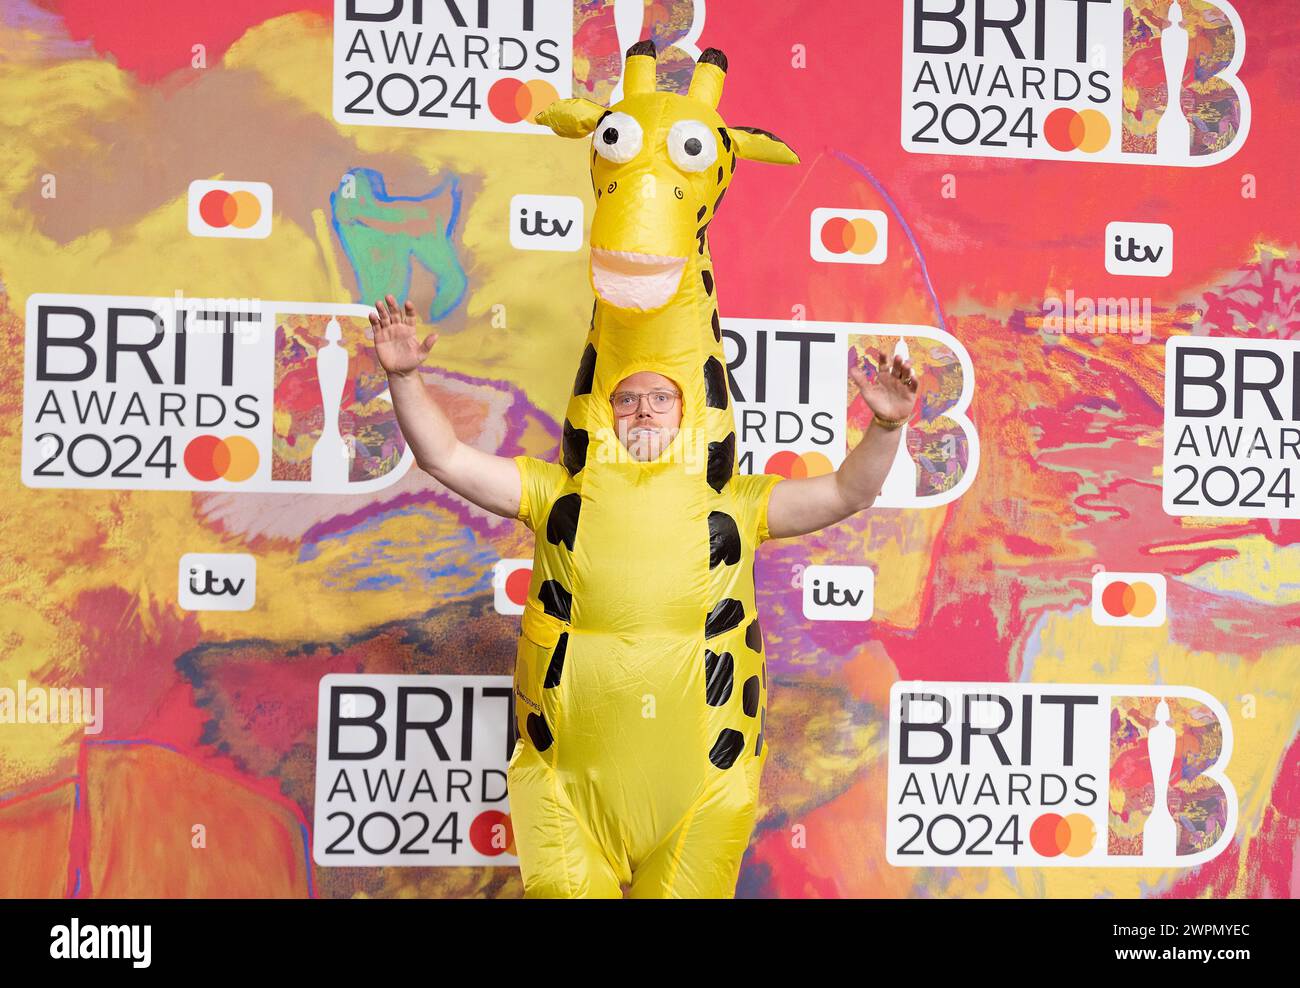 Londres, Royaume-Uni. 2 mars 2024. (USAGE ÉDITORIAL UNIQUEMENT. AUCUNE PUBLICATION CONSACRÉE EXCLUSIVEMENT À L'ARTISTE) Rob Beckett vêtu d'un costume de girafe en plastique lors de sa participation aux Brit Awards 2024 à l'O2 Arena le 02 mars 2024 à Londres, Angleterre. Crédit : S.A. / Alamy Live News Banque D'Images